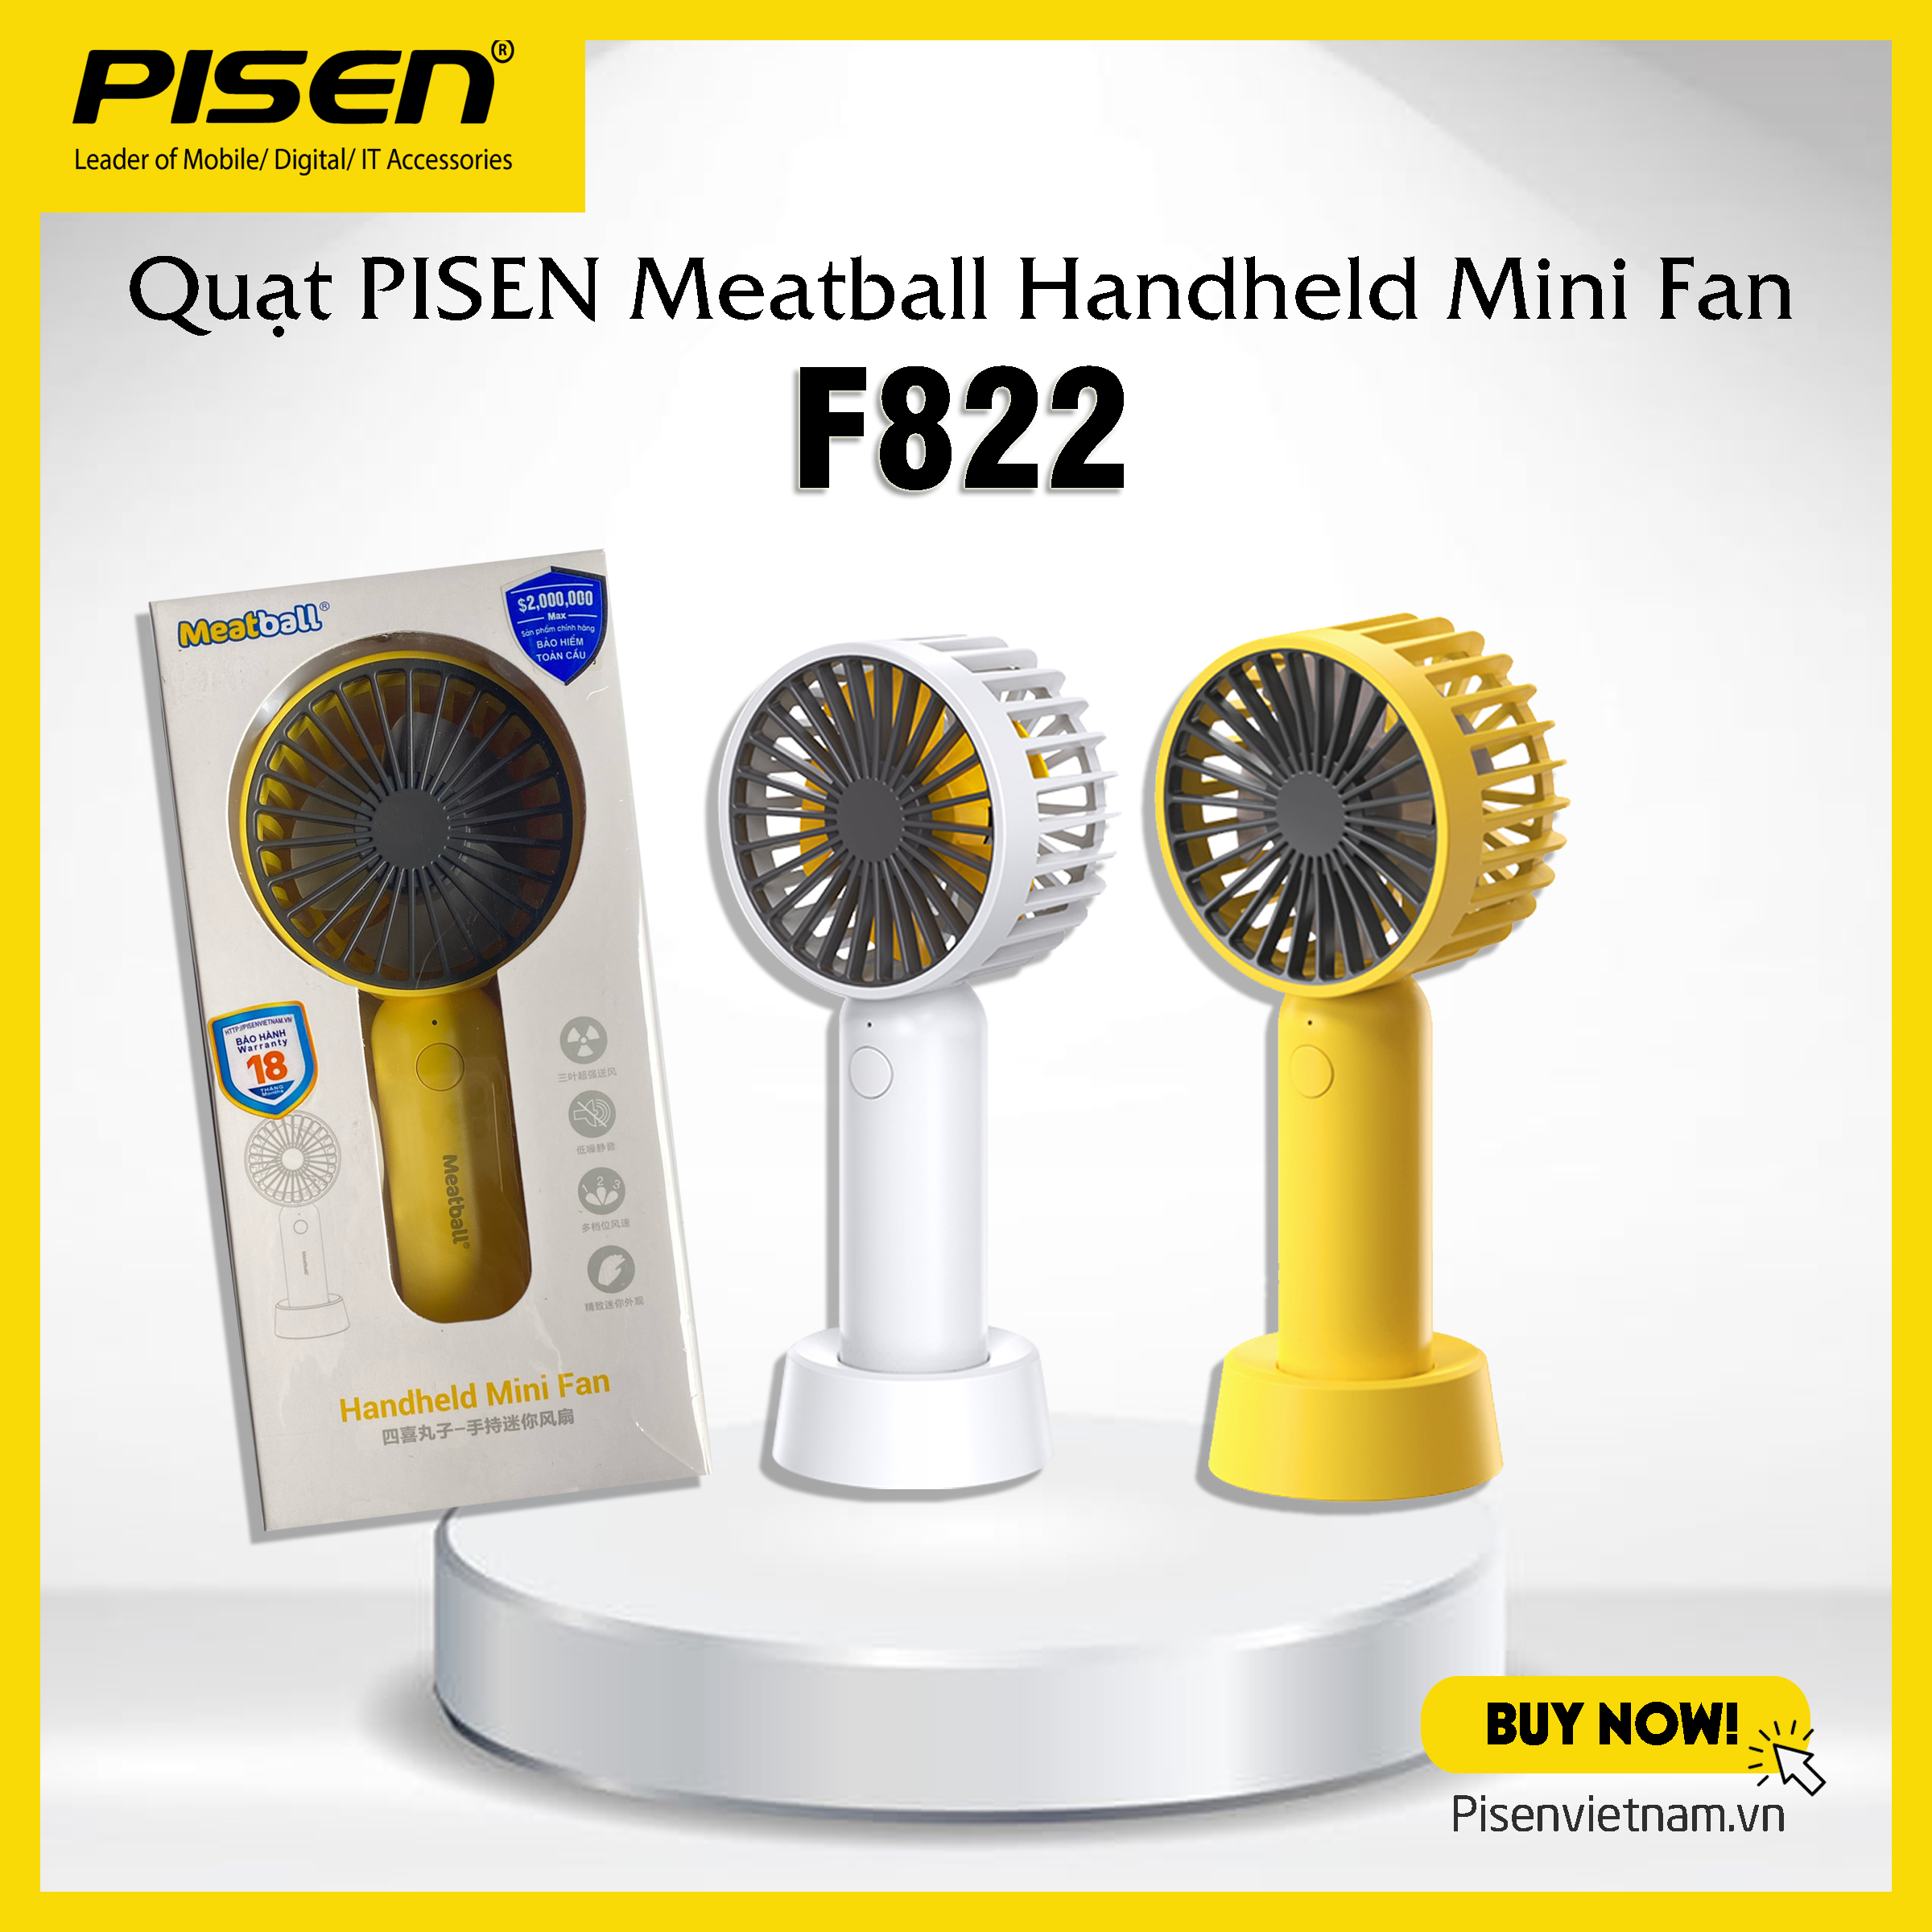 Quạt PISEN Meatball Handheld Mini Fan F822 vàng/ trắng